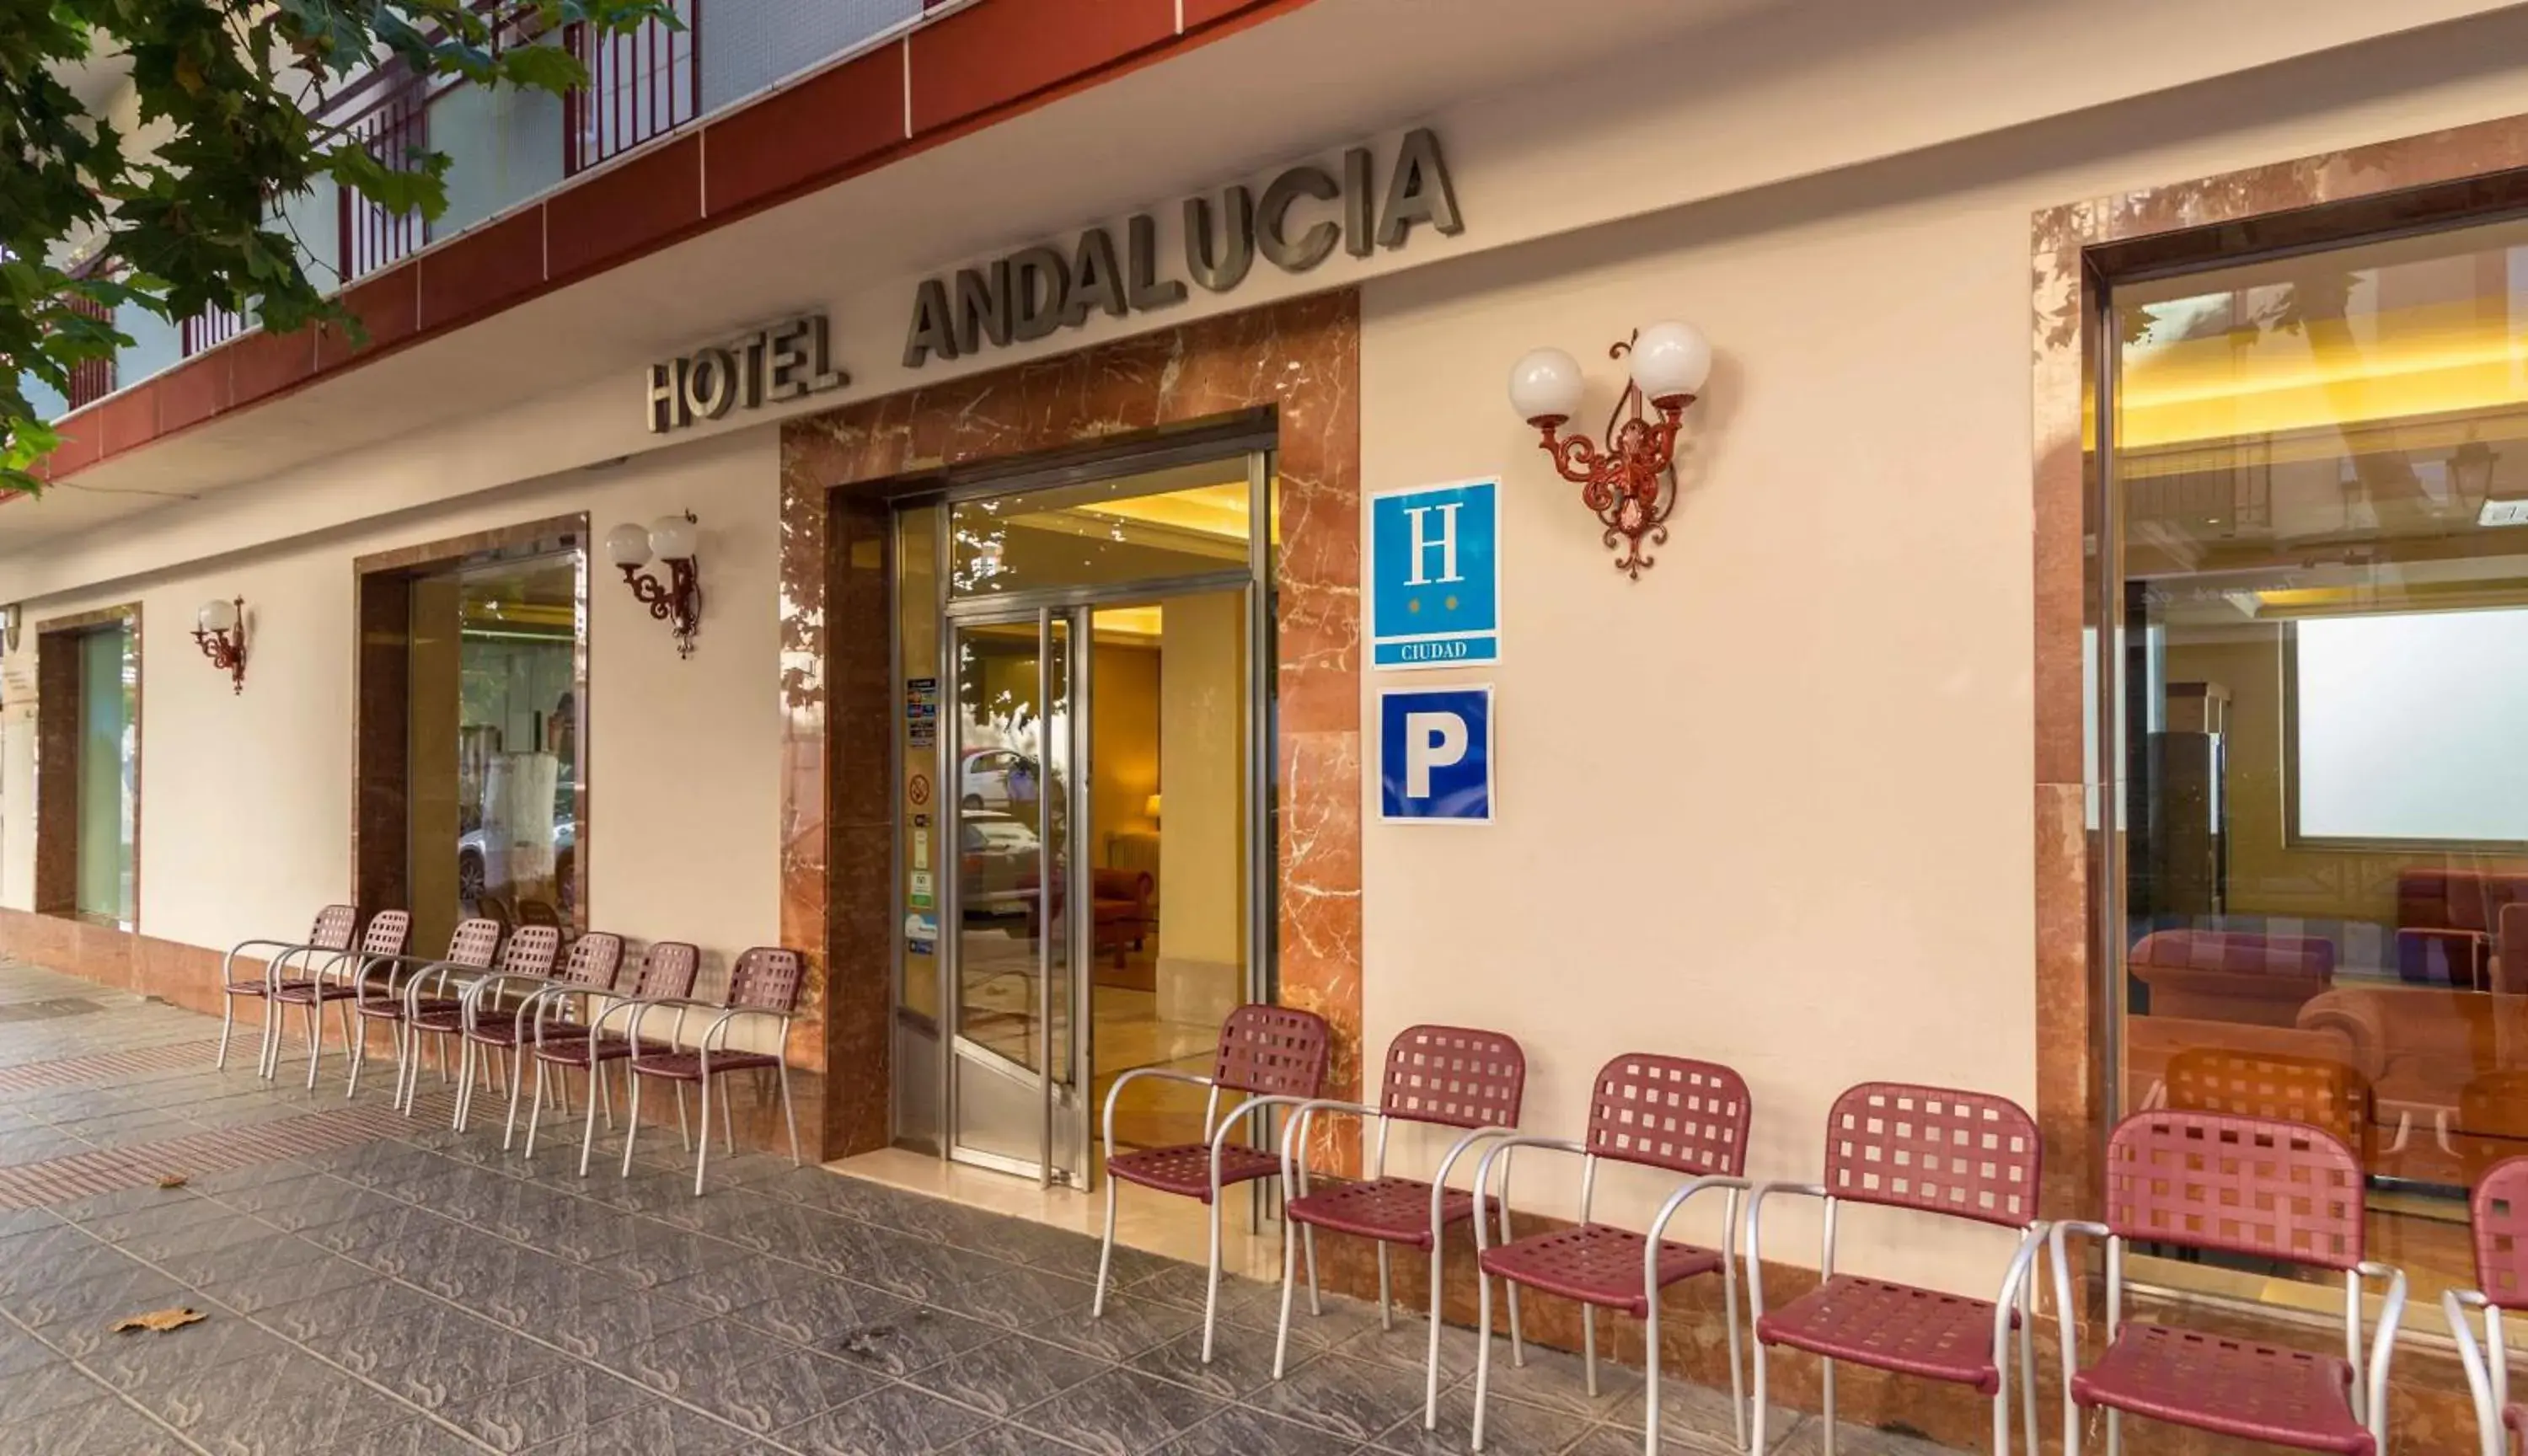 Facade/entrance in Hotel Andalucia